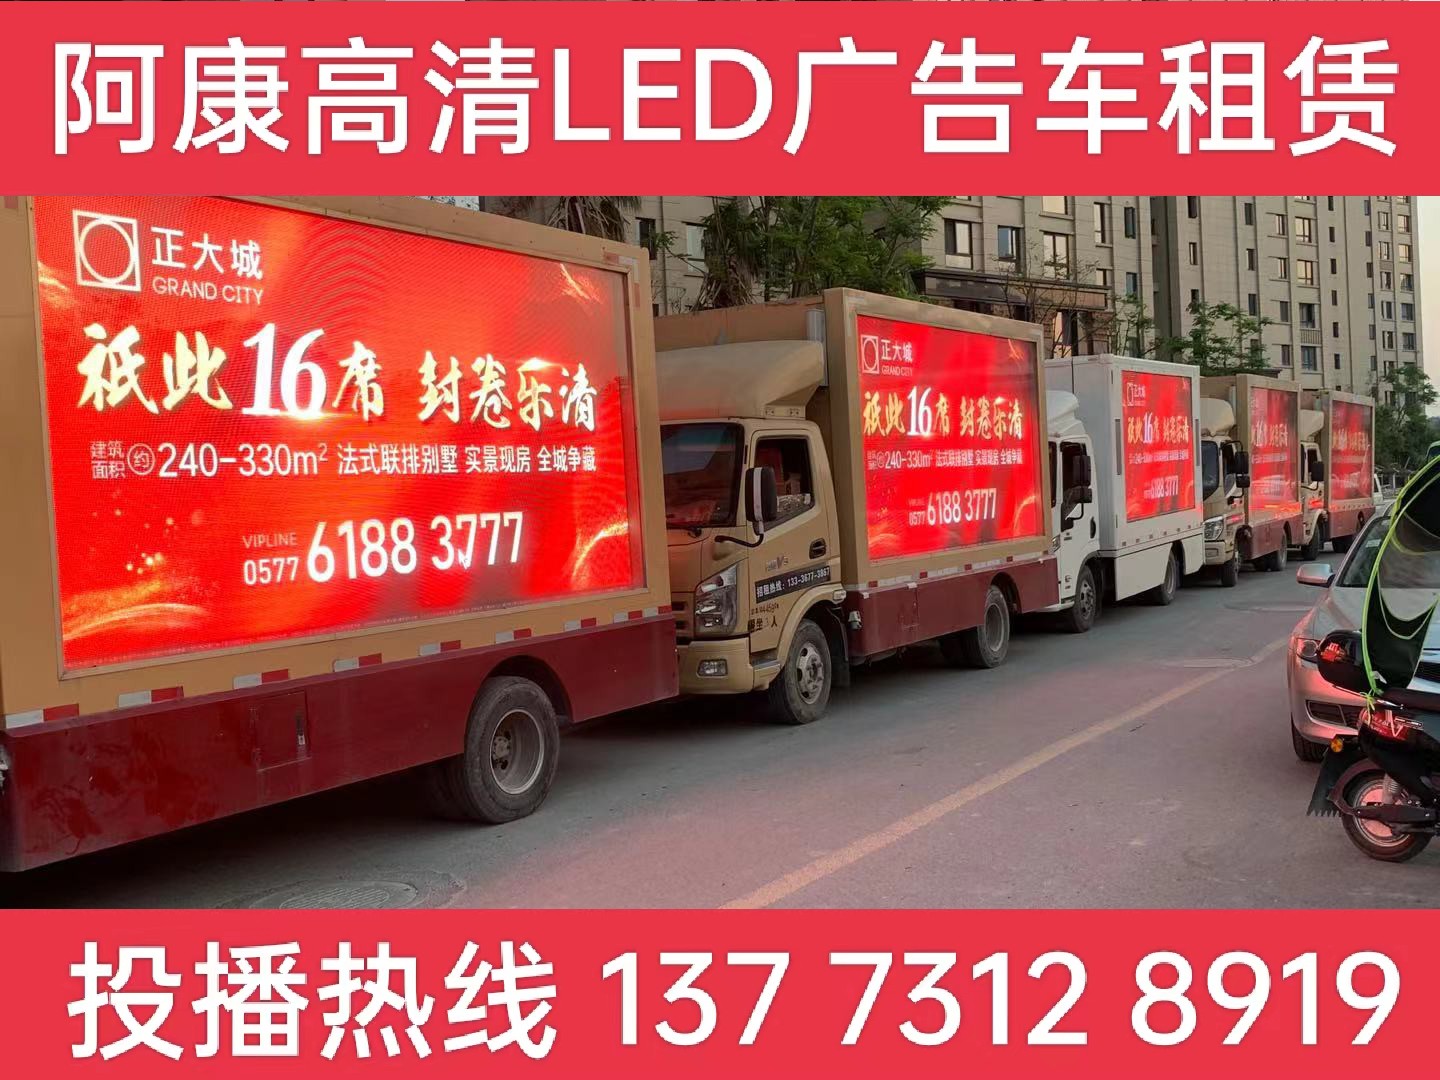 扬州LED广告车出租